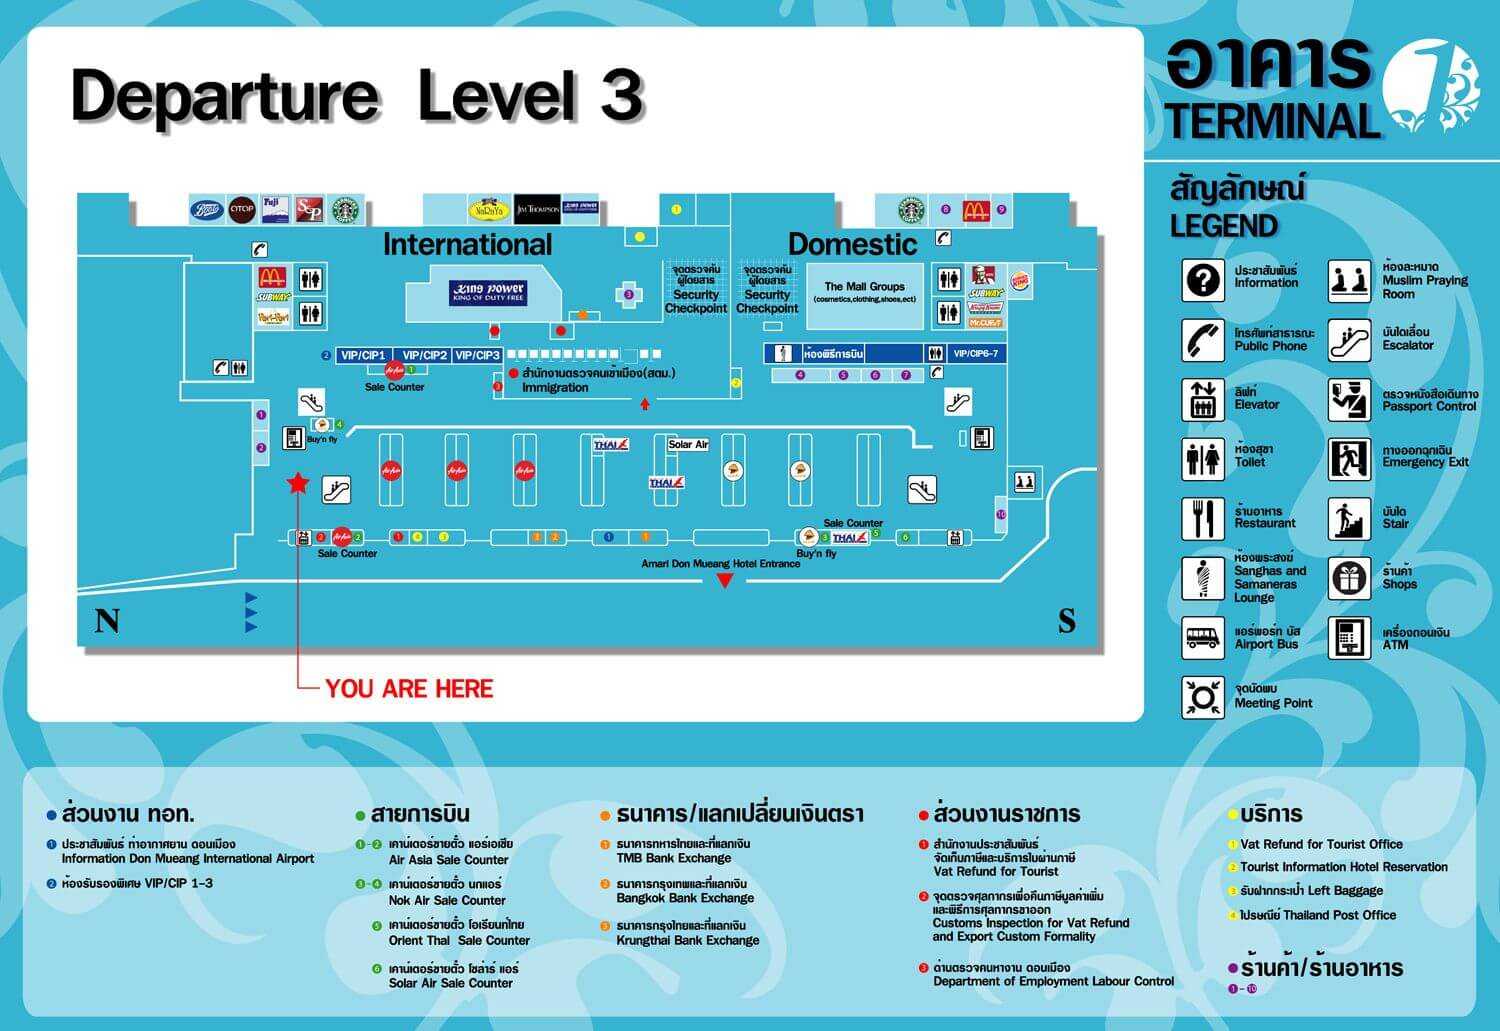 Аэропорт бангкока суварнабхуми — табло, схема, отели рядом и устройство